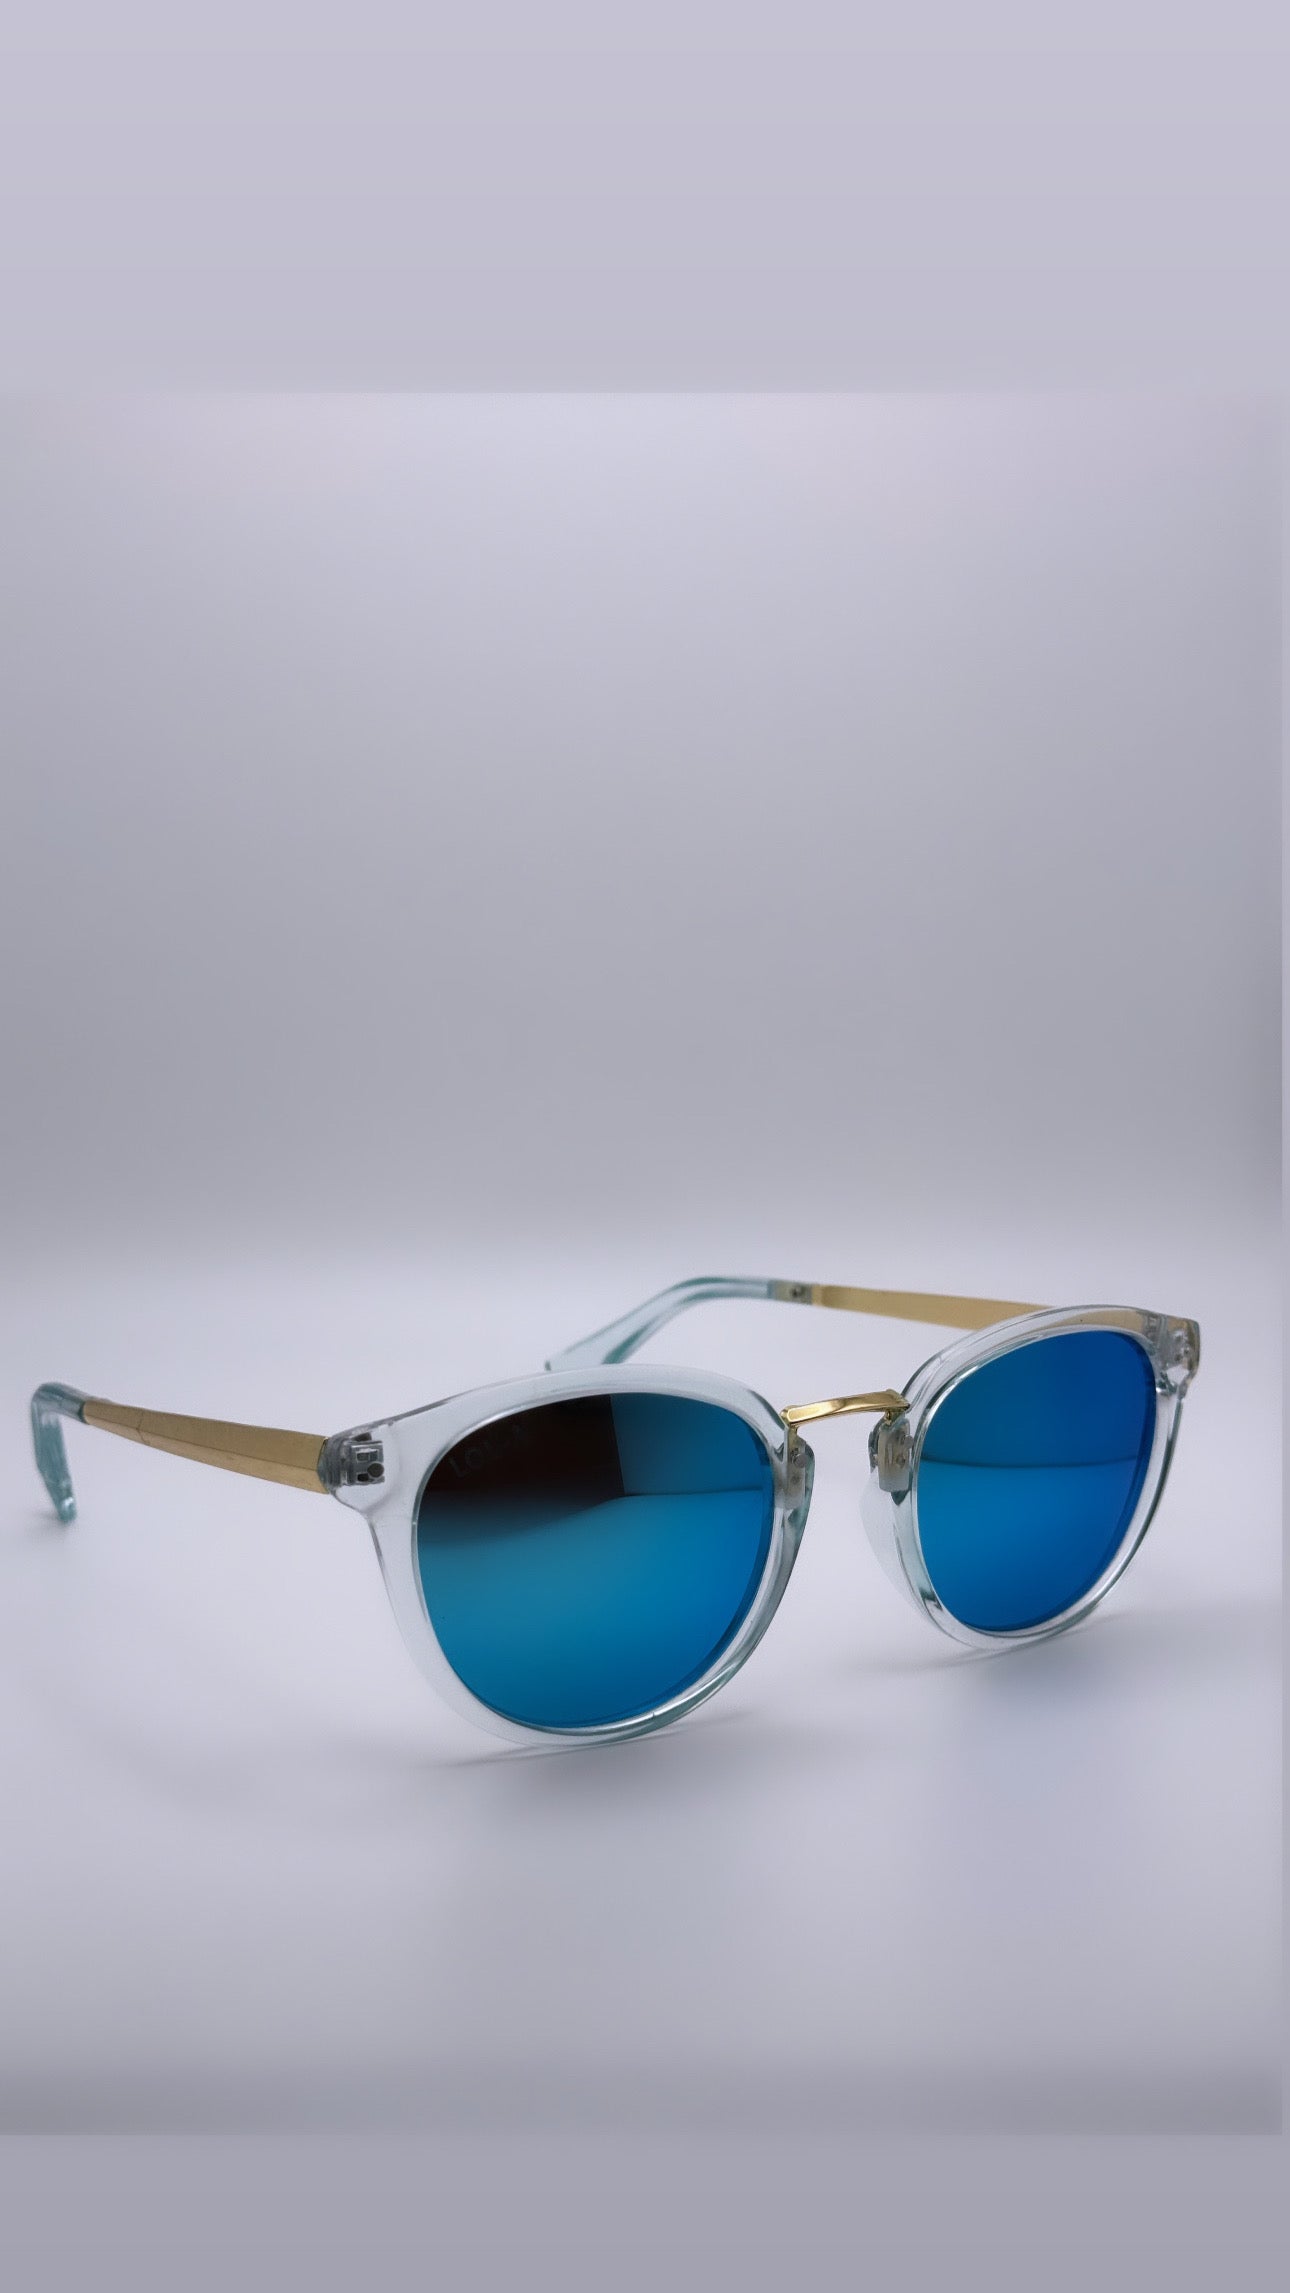 "SKY BLUE" Sunglasses